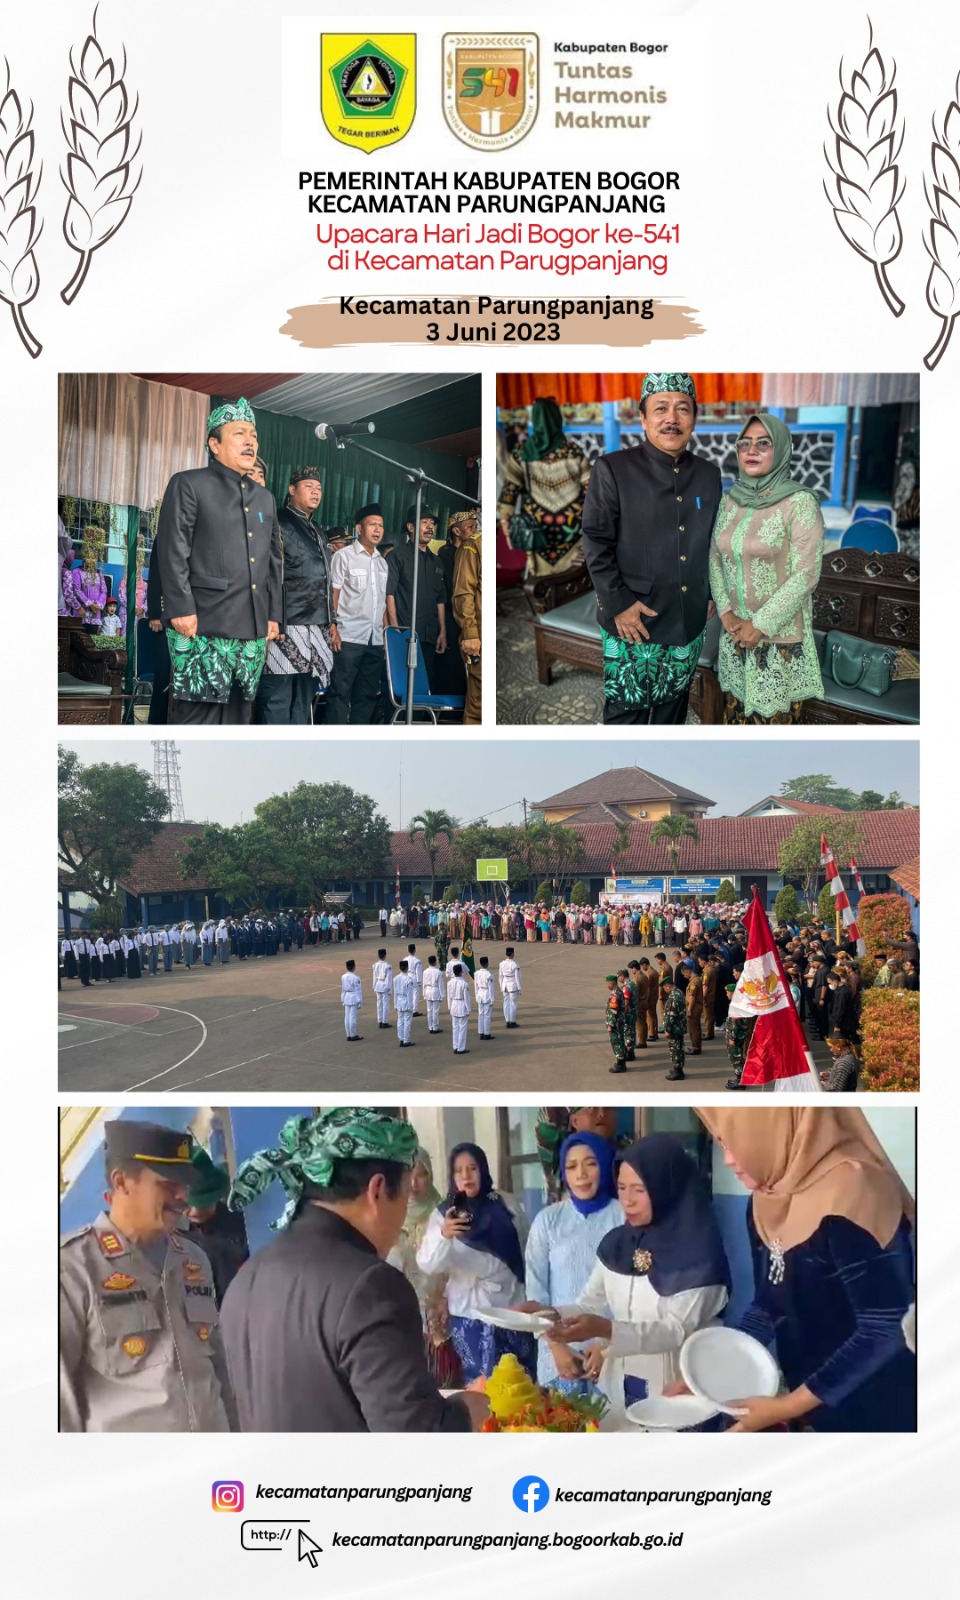 Upacara Hari Jadi Bogor ke-541 di Kecamatan Parungpanjang